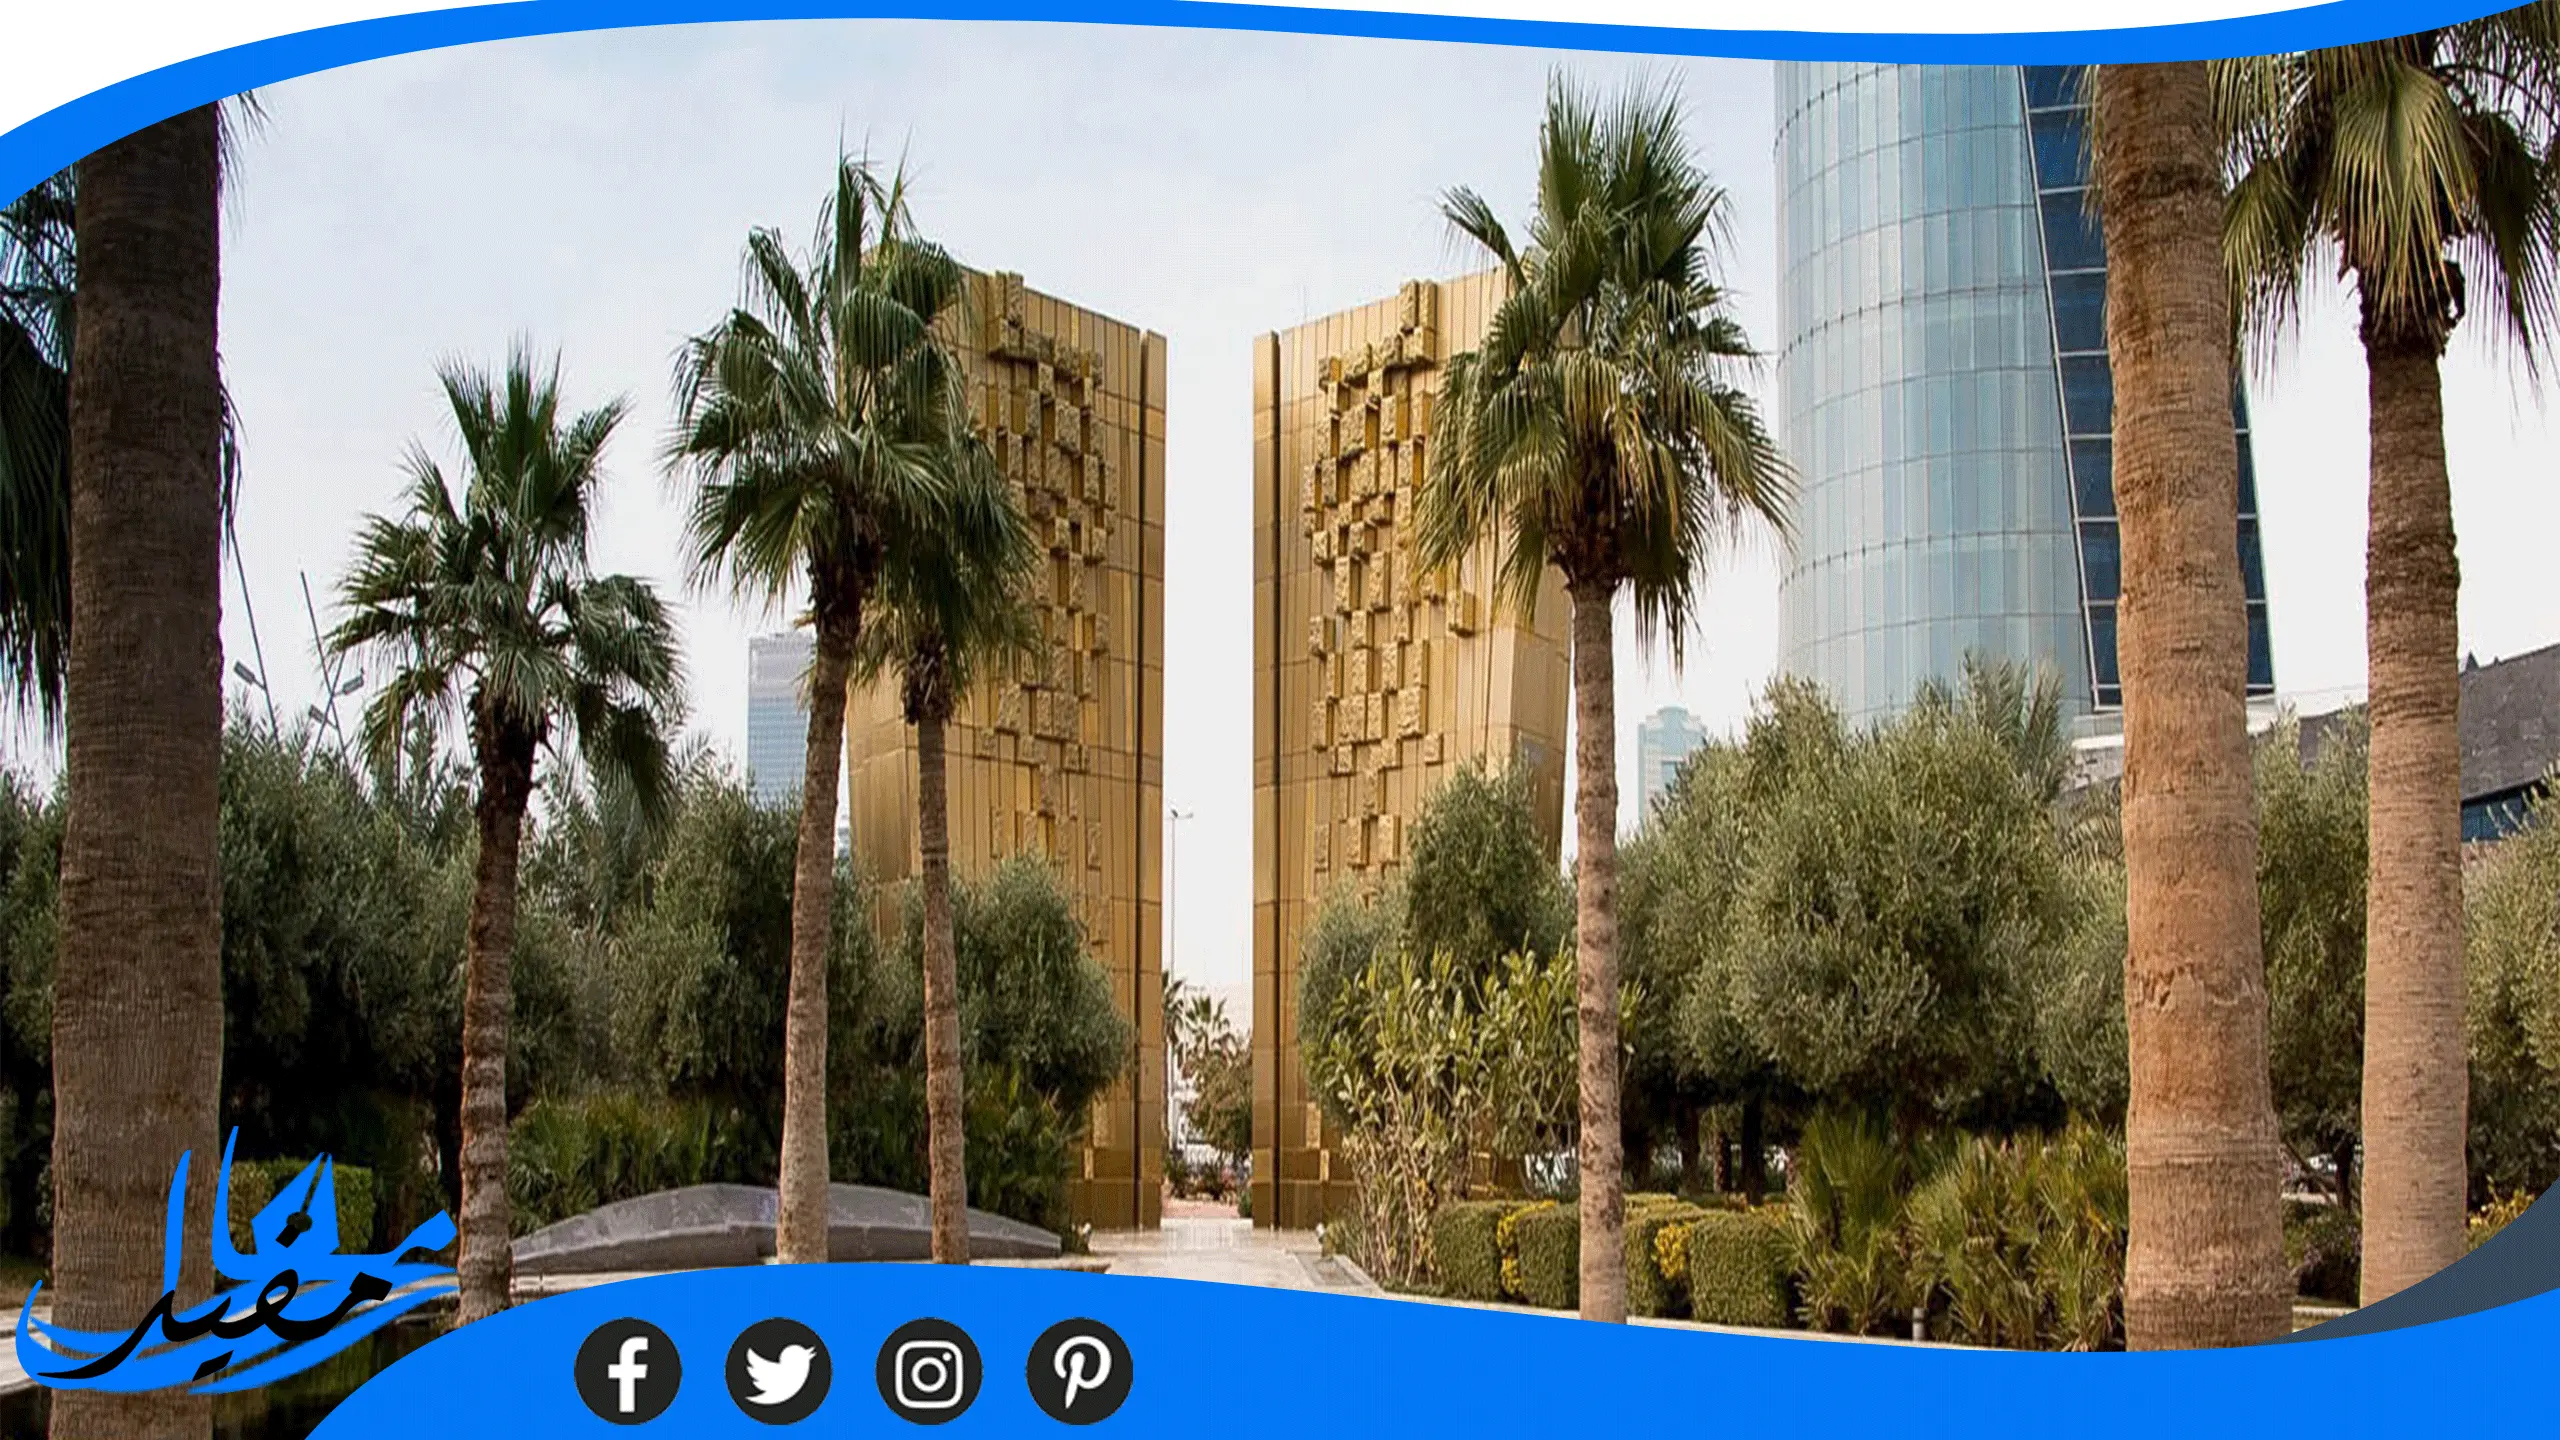 ما نسب قبول جامعة عبدالله السالم للسنة الجديدة